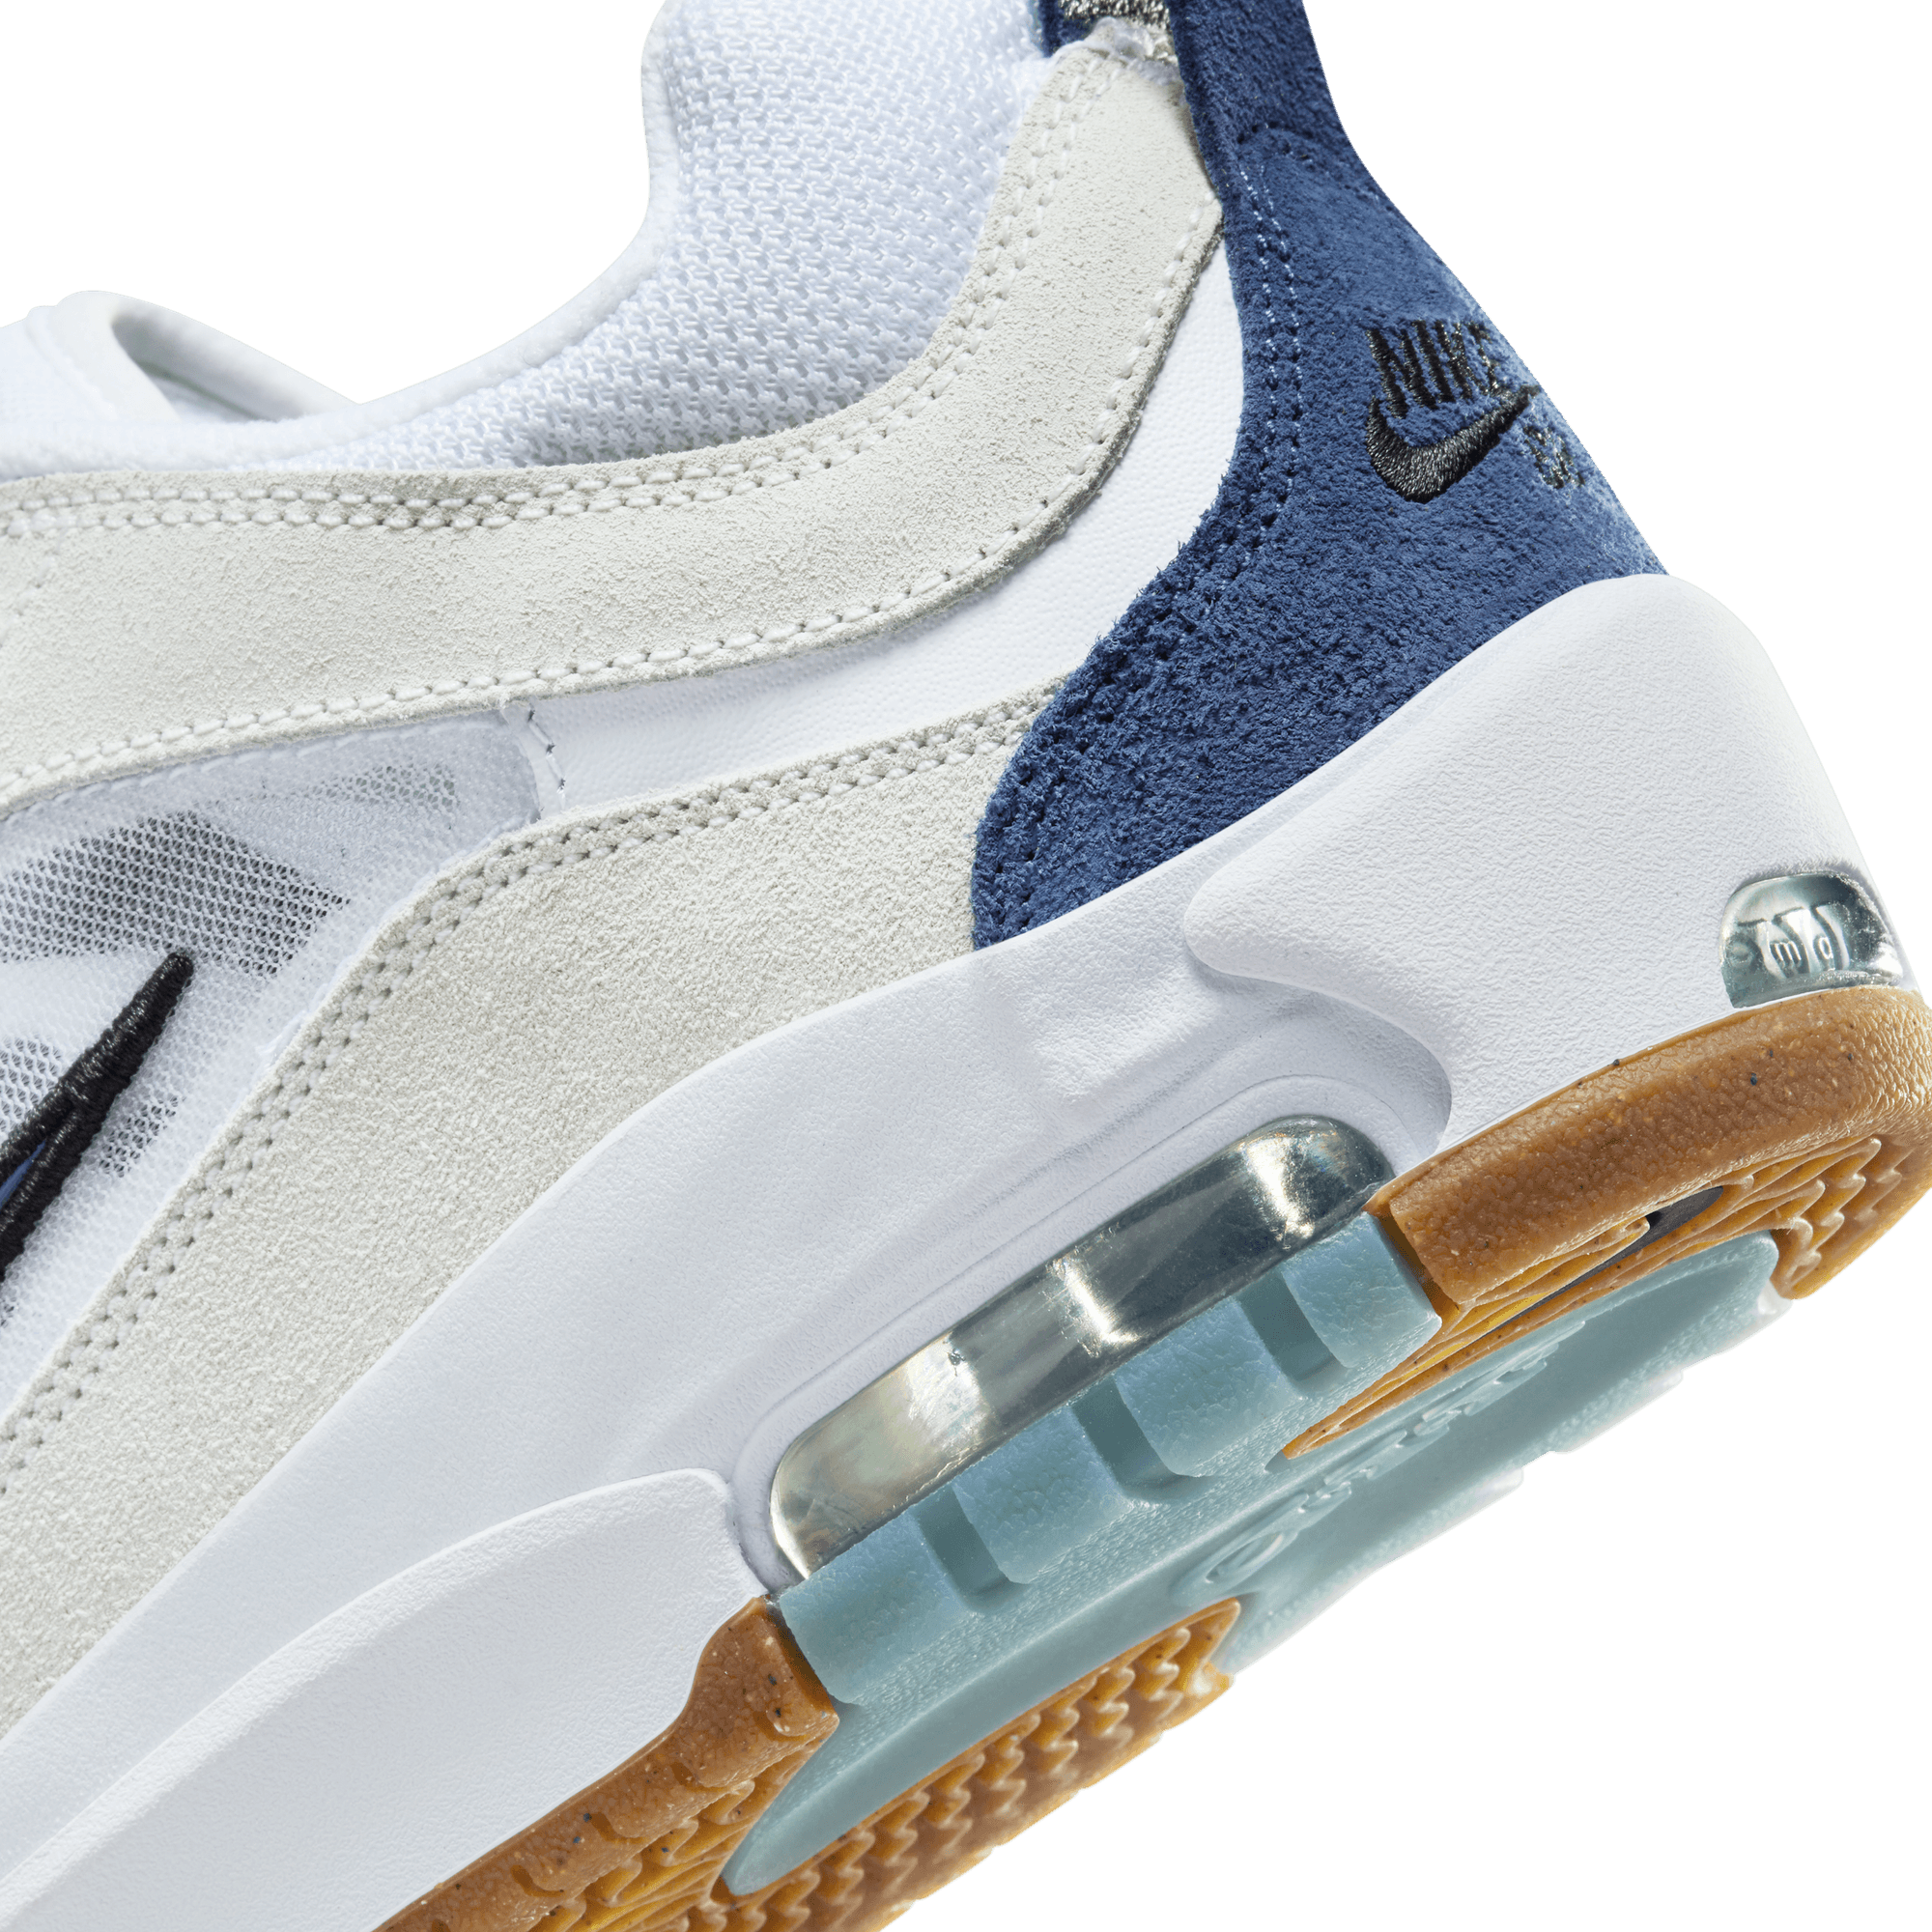 White/Navy Air Max Ishod 2 Nike SB Skate Shoe Detail